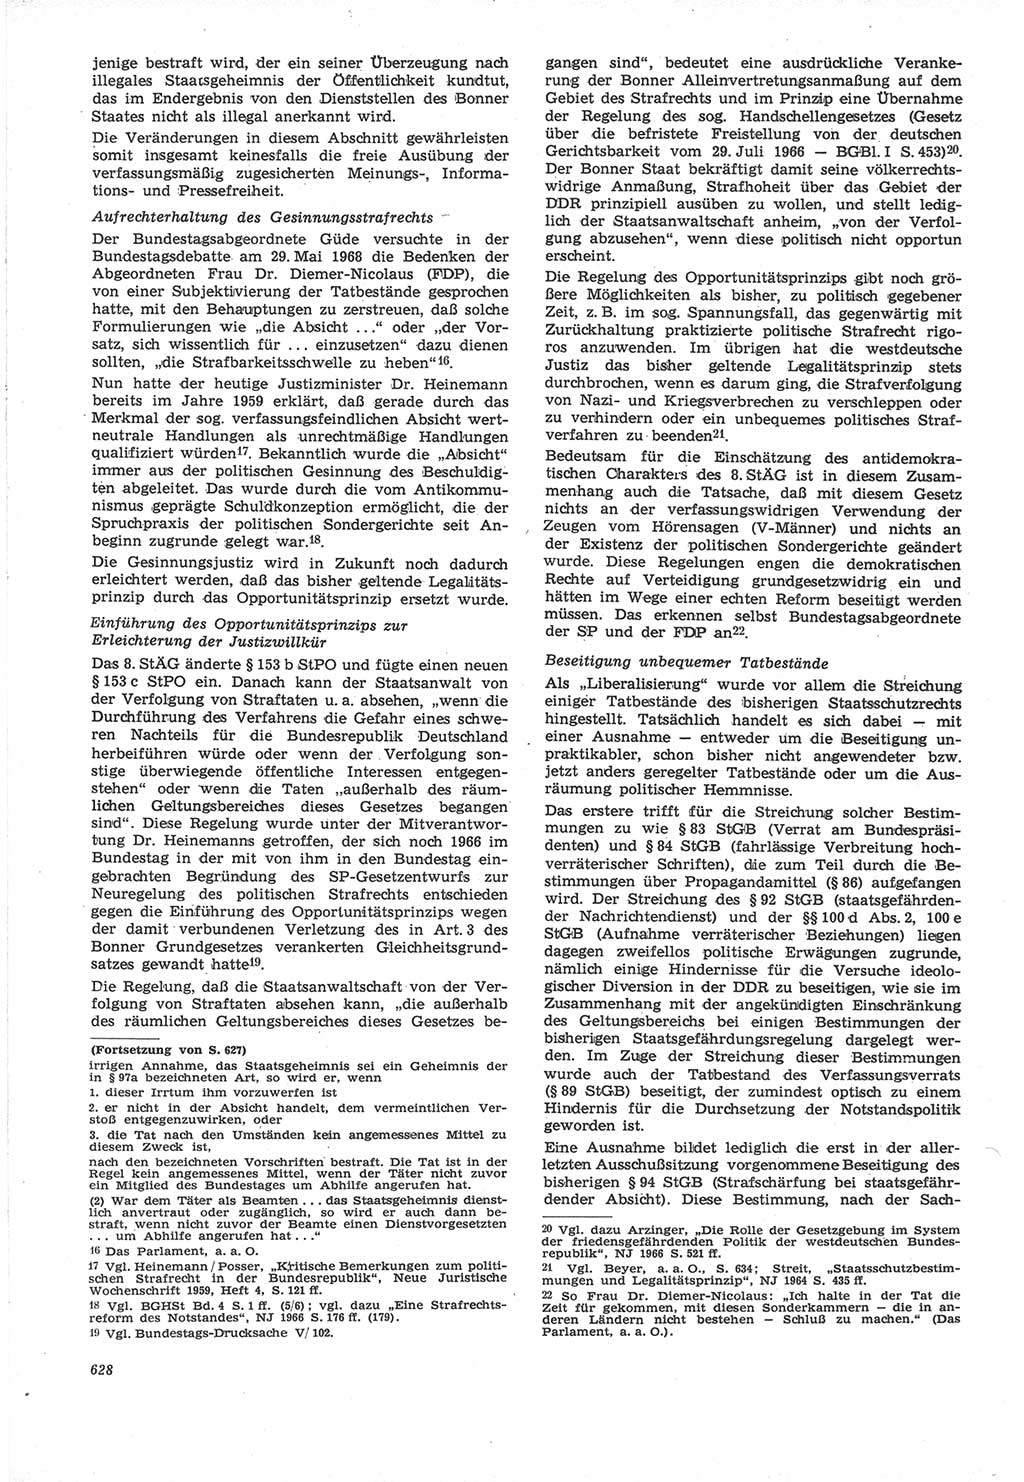 Neue Justiz (NJ), Zeitschrift für Recht und Rechtswissenschaft [Deutsche Demokratische Republik (DDR)], 22. Jahrgang 1968, Seite 628 (NJ DDR 1968, S. 628)